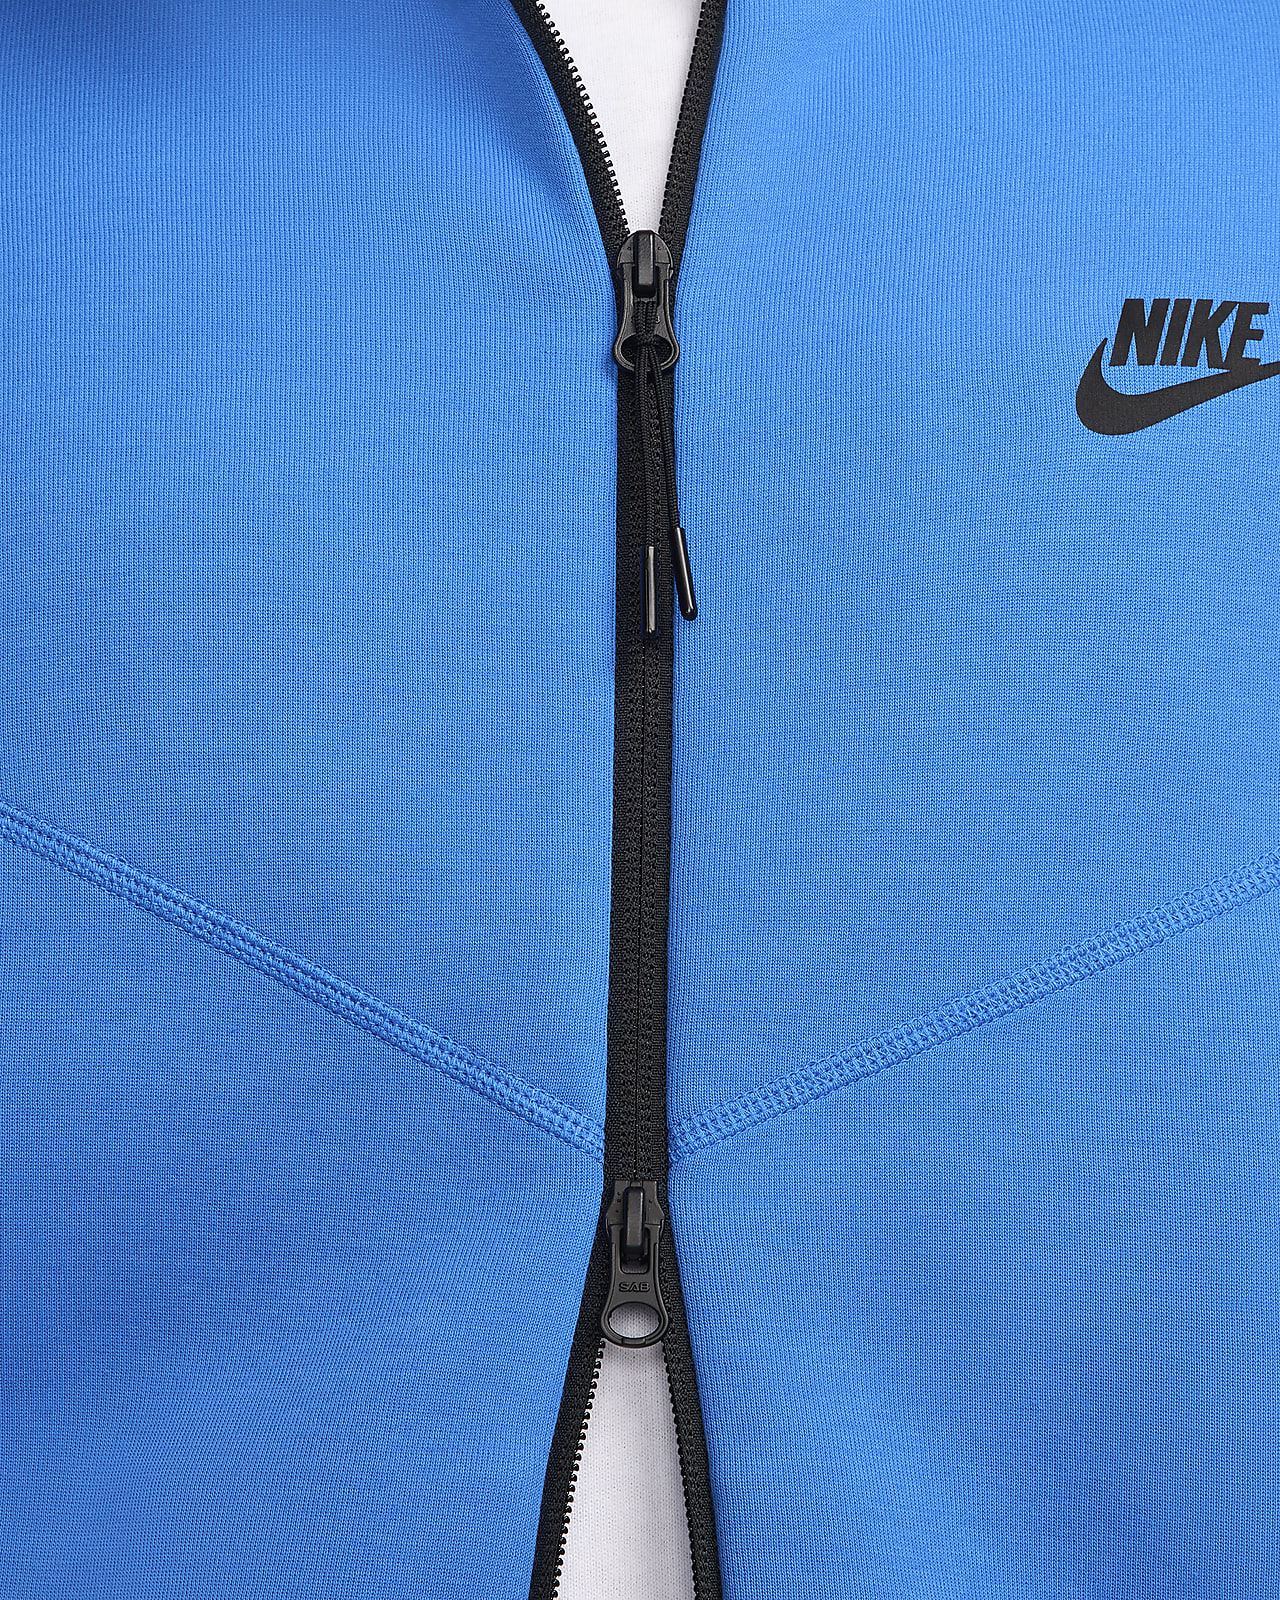 Nike Sportswear Tech Fleece Windrunner Men's Full-Zip Hoodie. Nike.com